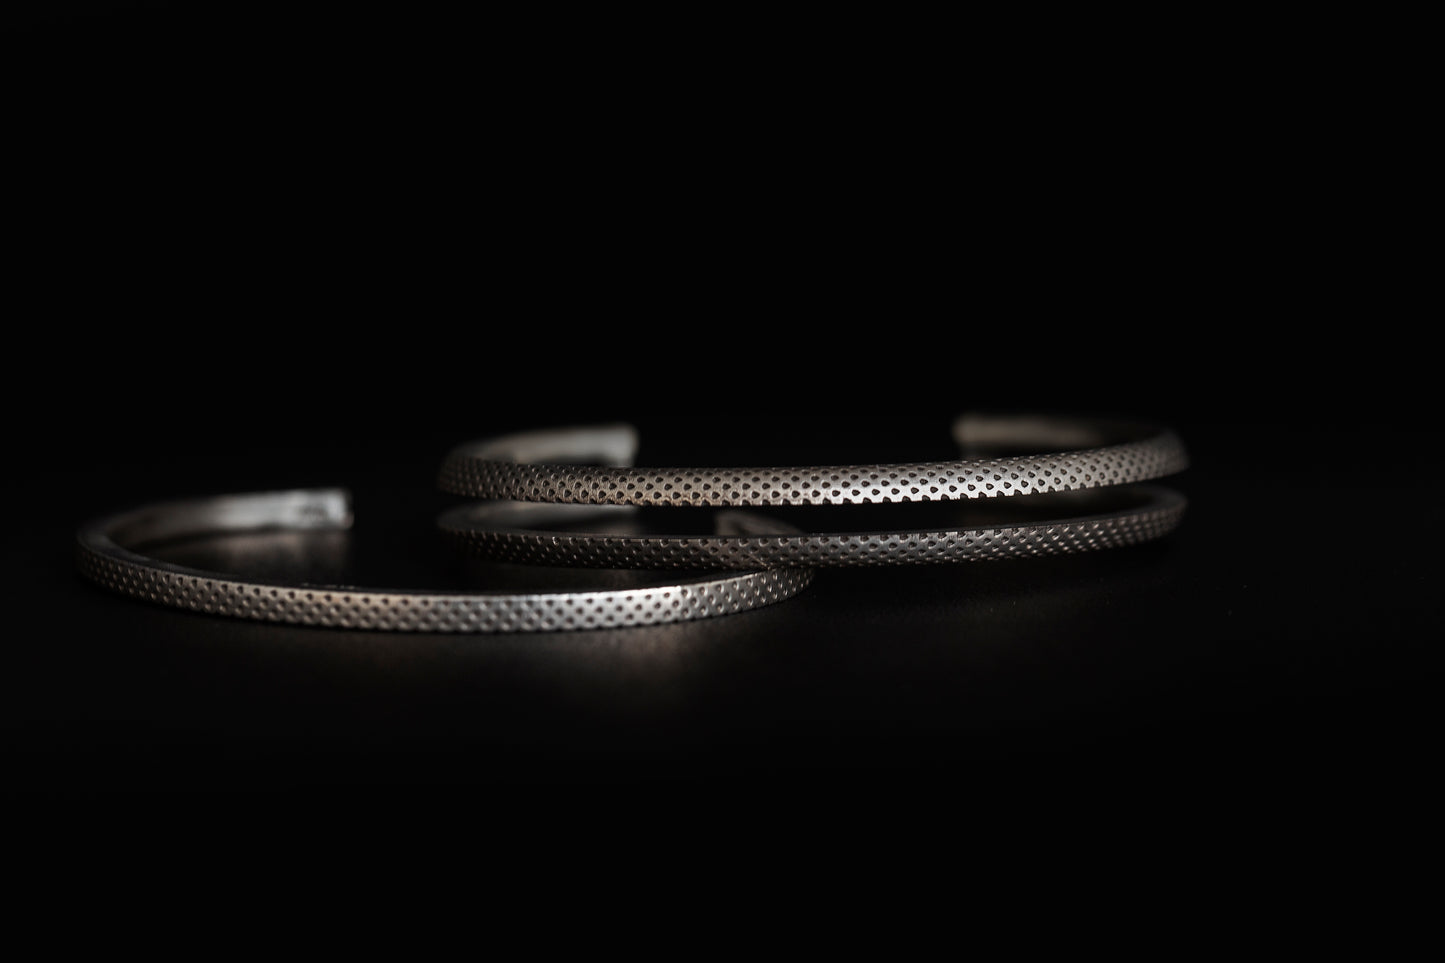 Snakeskin Double Cuff Interlock Bracelet